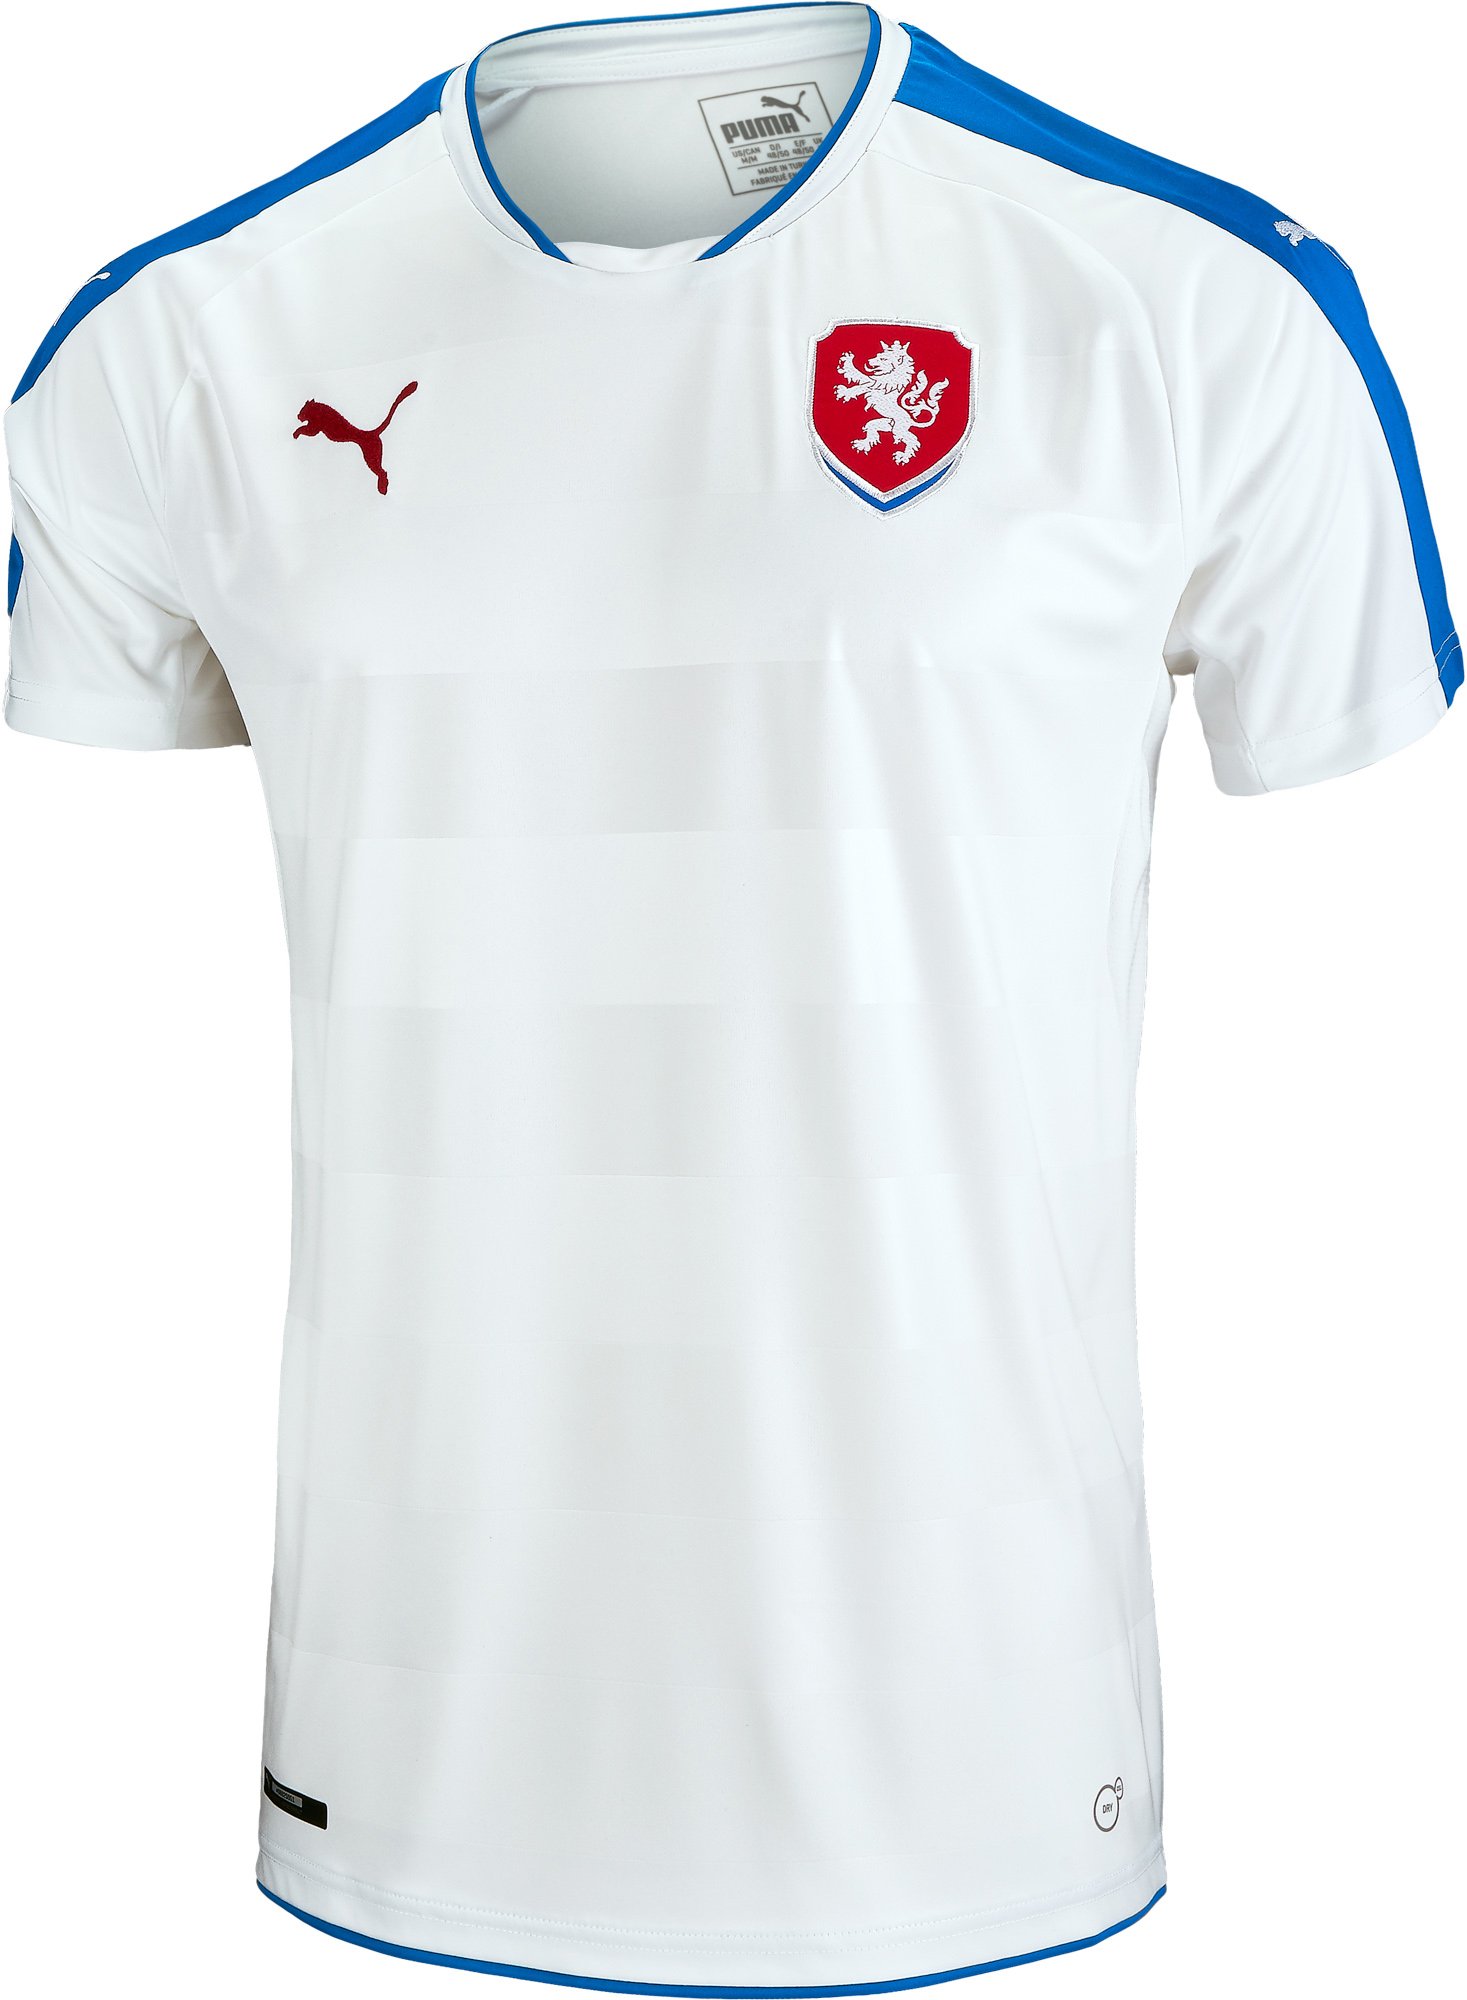 czech soccer jersey